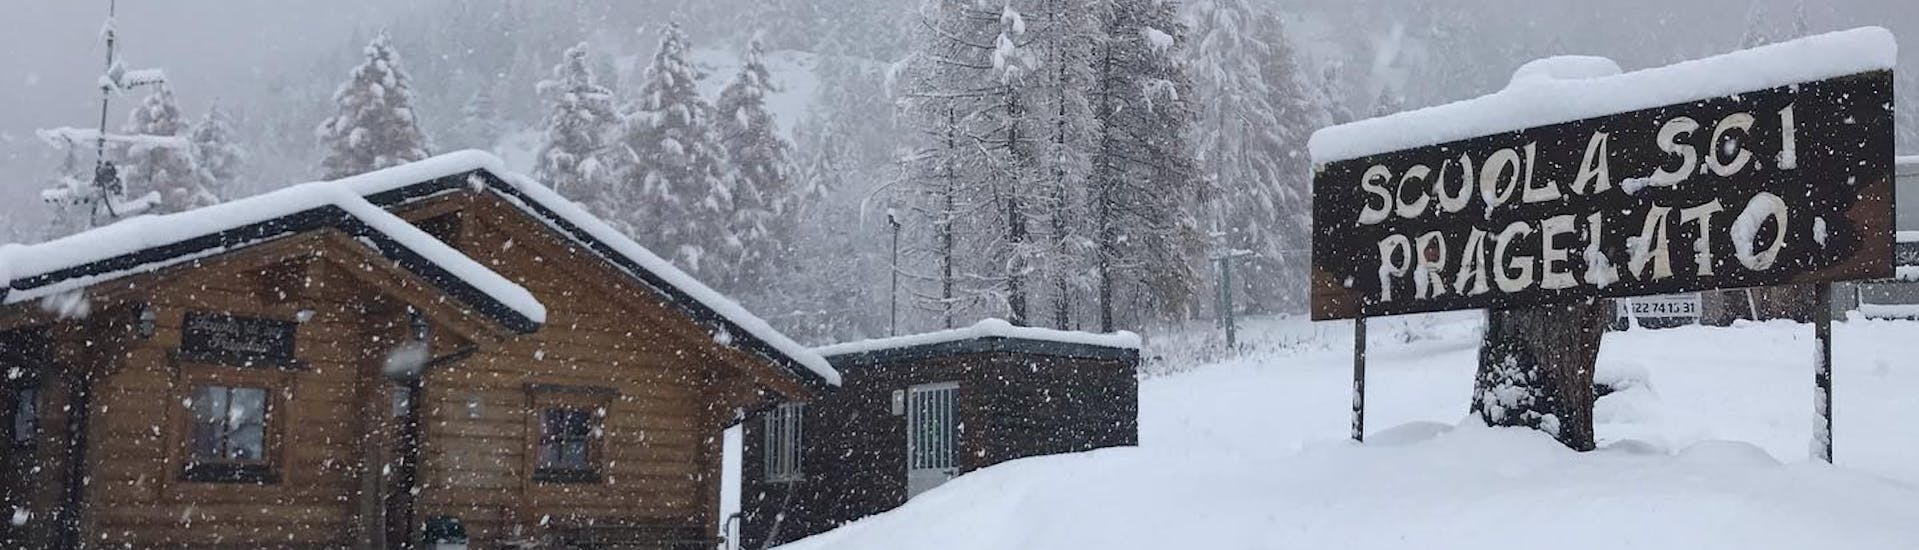 Photo étonnante de l'école de ski couverte de neige à Pragelato. Environnement parfait pour un des cours particuliers de ski pour adultes de tous niveaux.